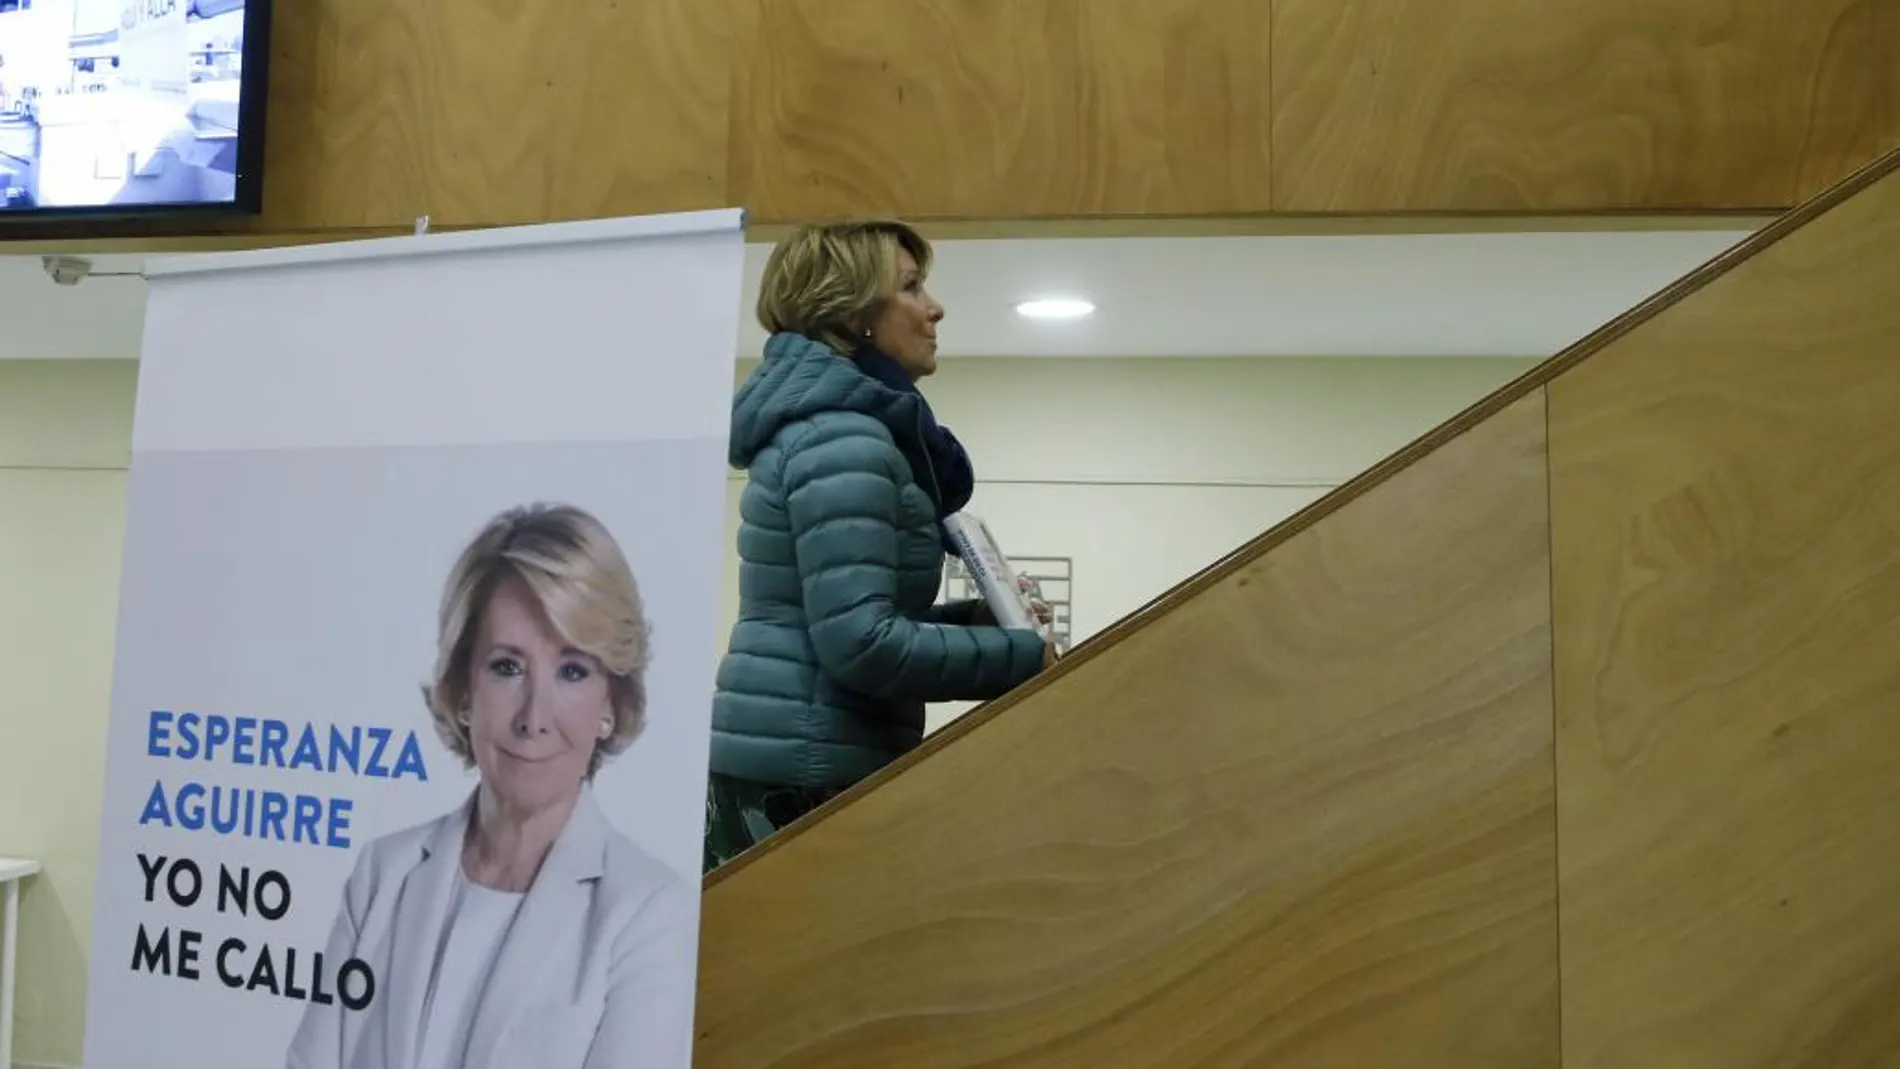 La portavoz del PP en el Ayuntamiento de Madrid, Esperanza Aguirre, durante la presentación de su nuevo libro "Yo no me callo"